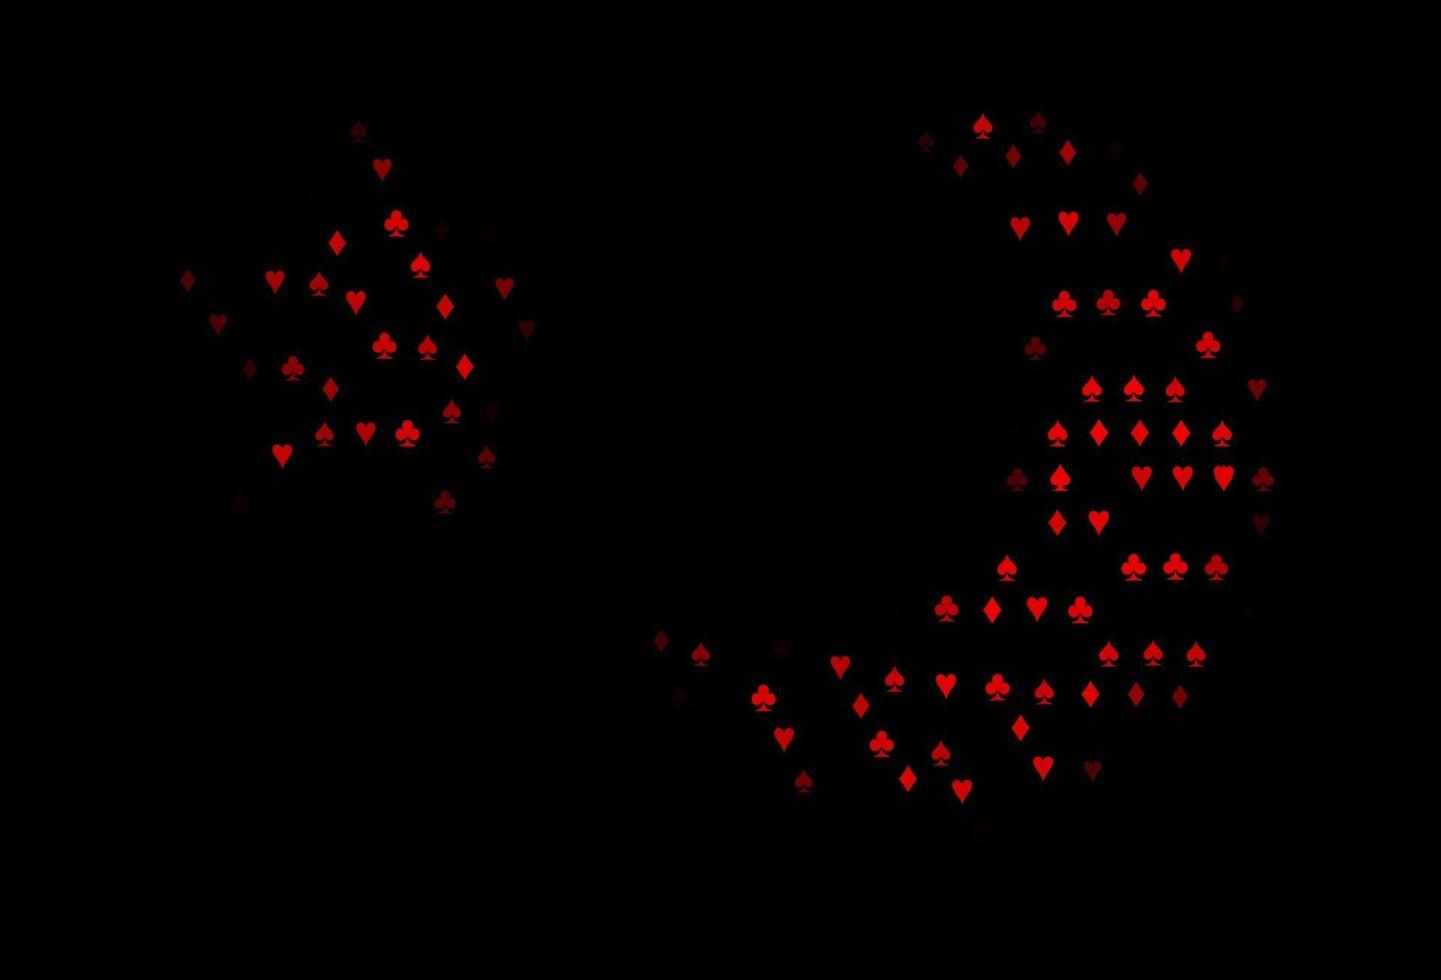 mörk röd vektor mall med pokersymboler.